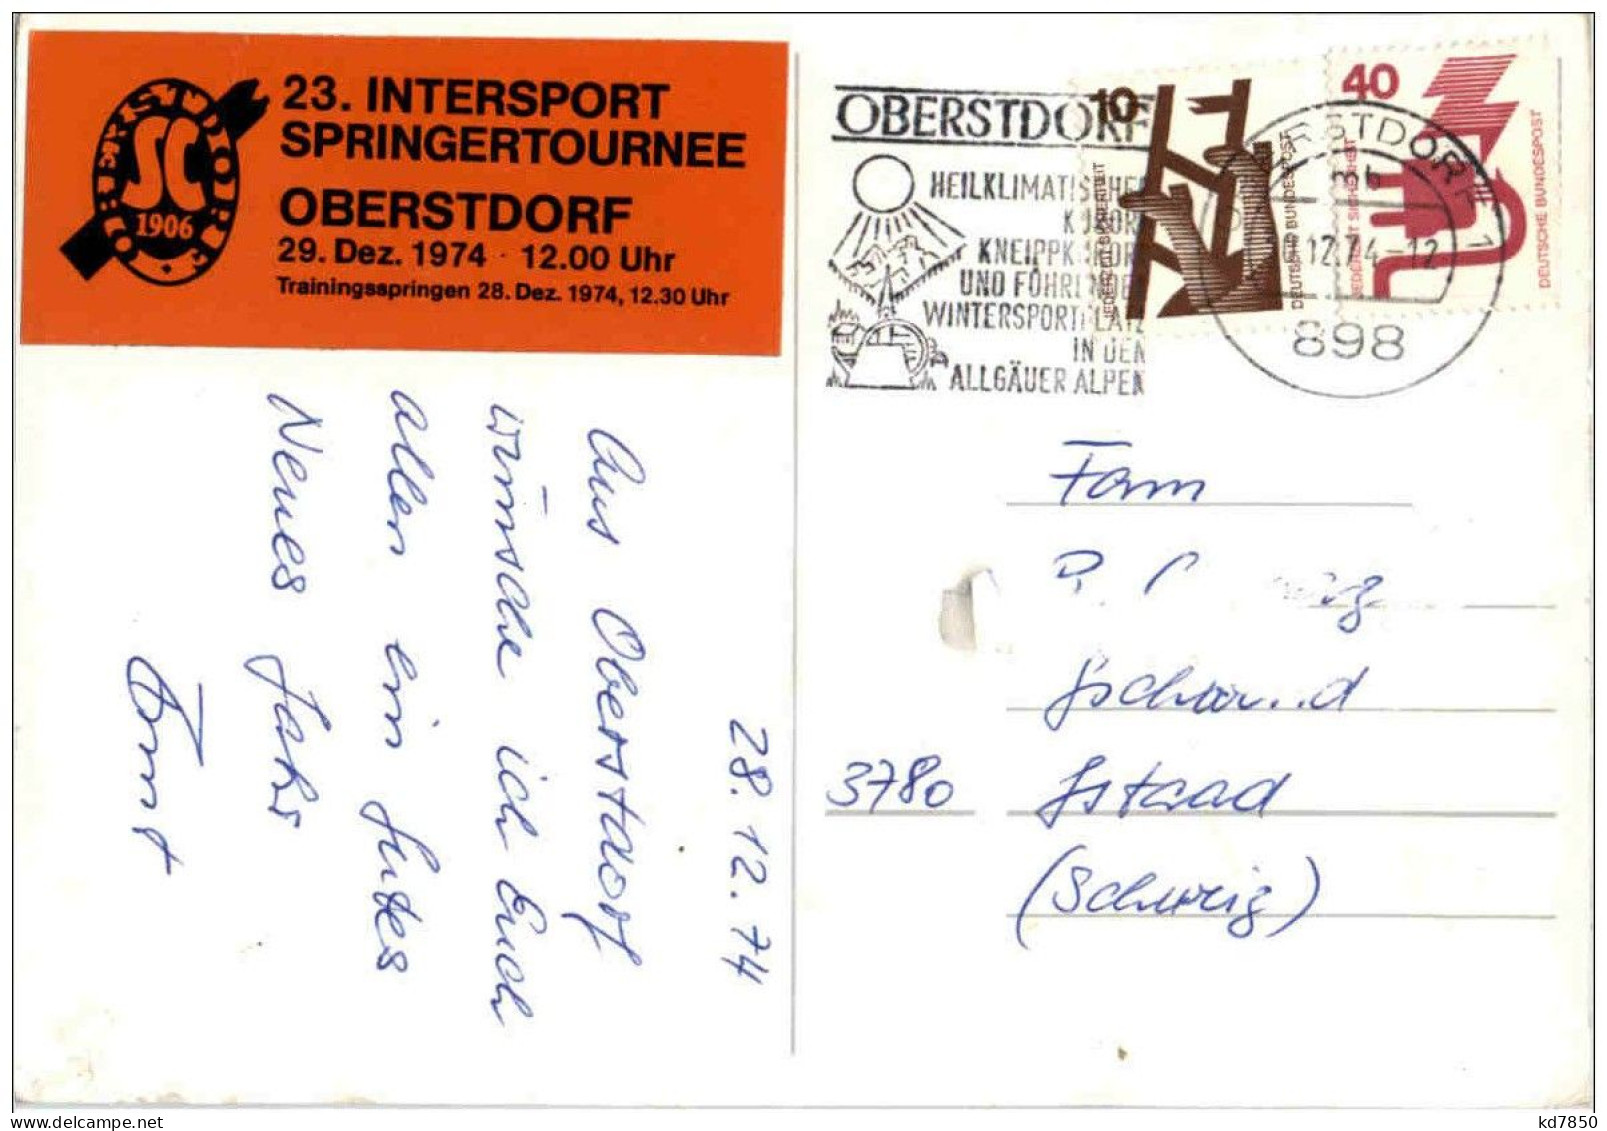 23. Internationale Springertournee 1974 Oberstdorf Garmisch Innsbruck Bischofshofen - Wintersport